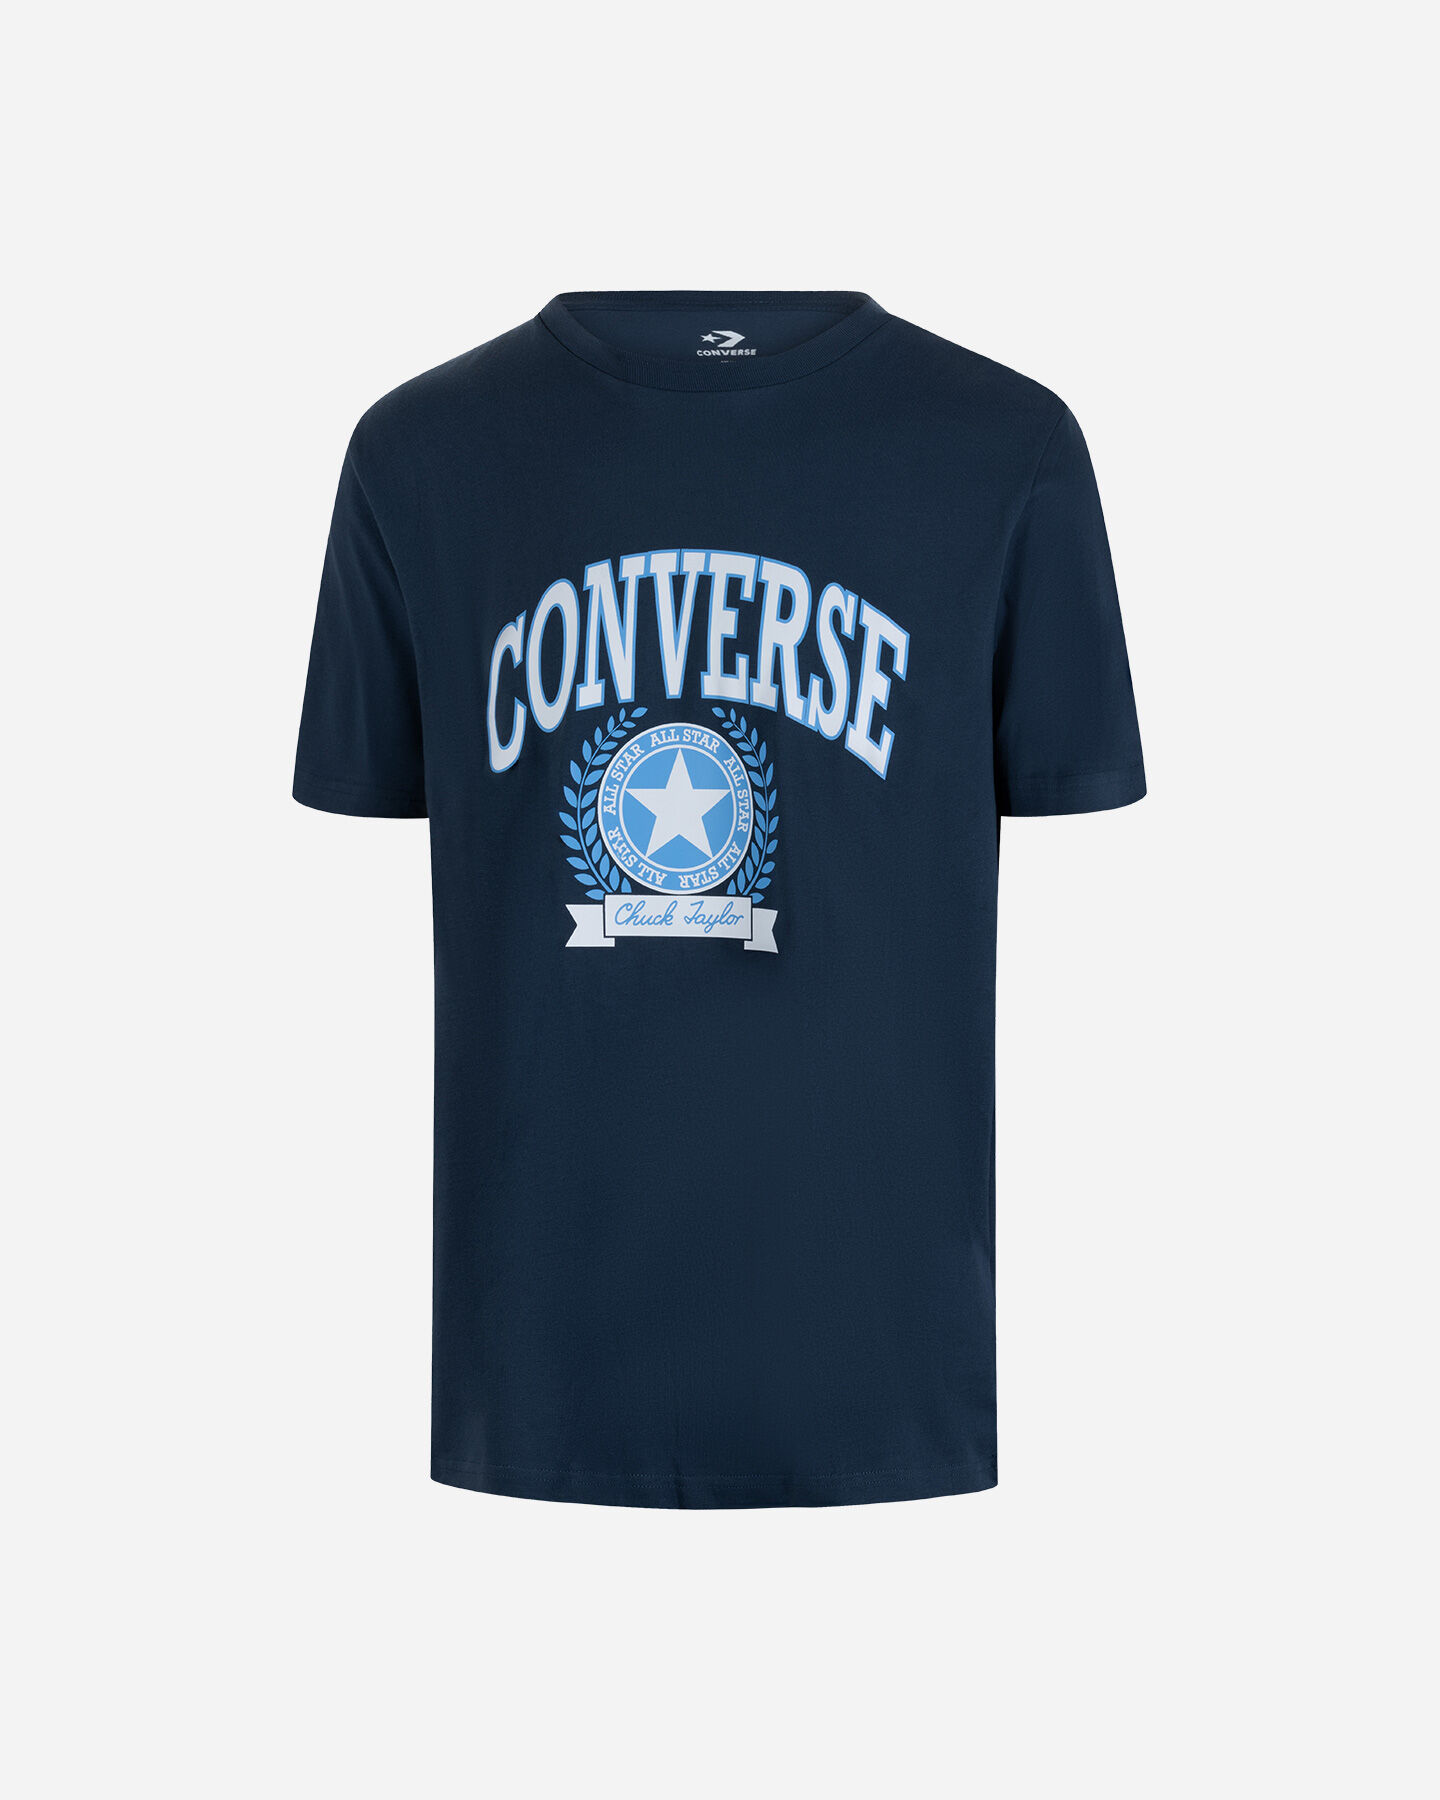  T-Shirt CONVERSE CHUCK RETRO COLLEGIATE M S5604643|410|L scatto 0